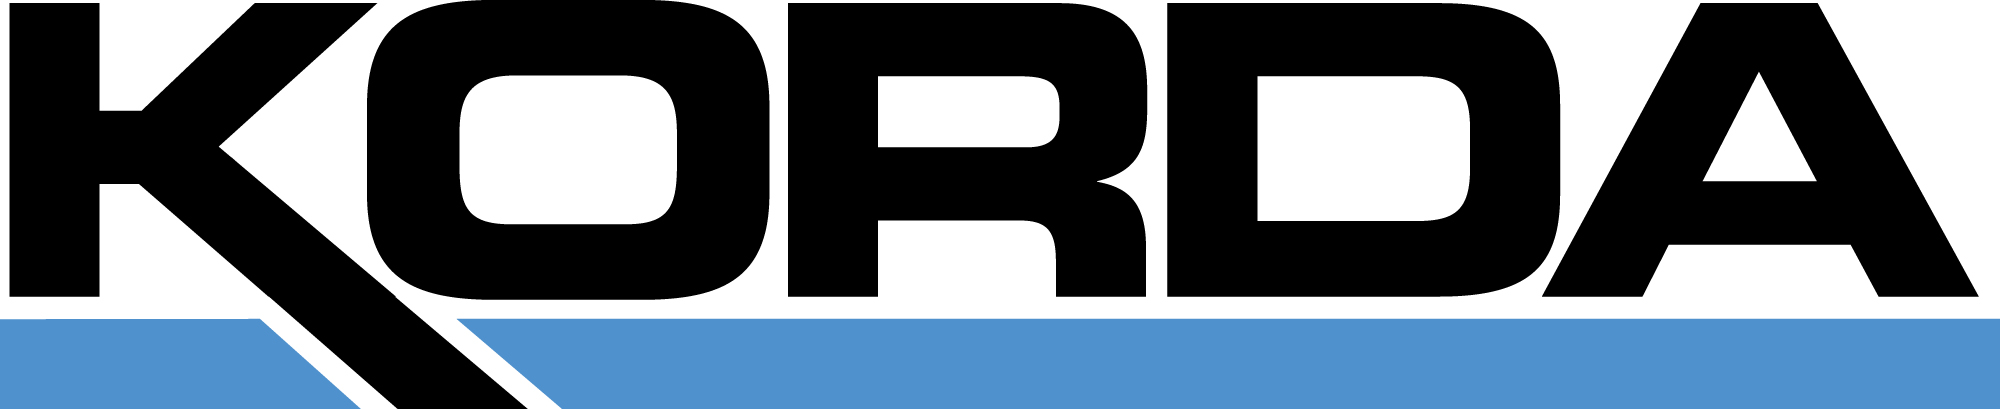 Korda/Nemeth Engineering, Inc. Logo